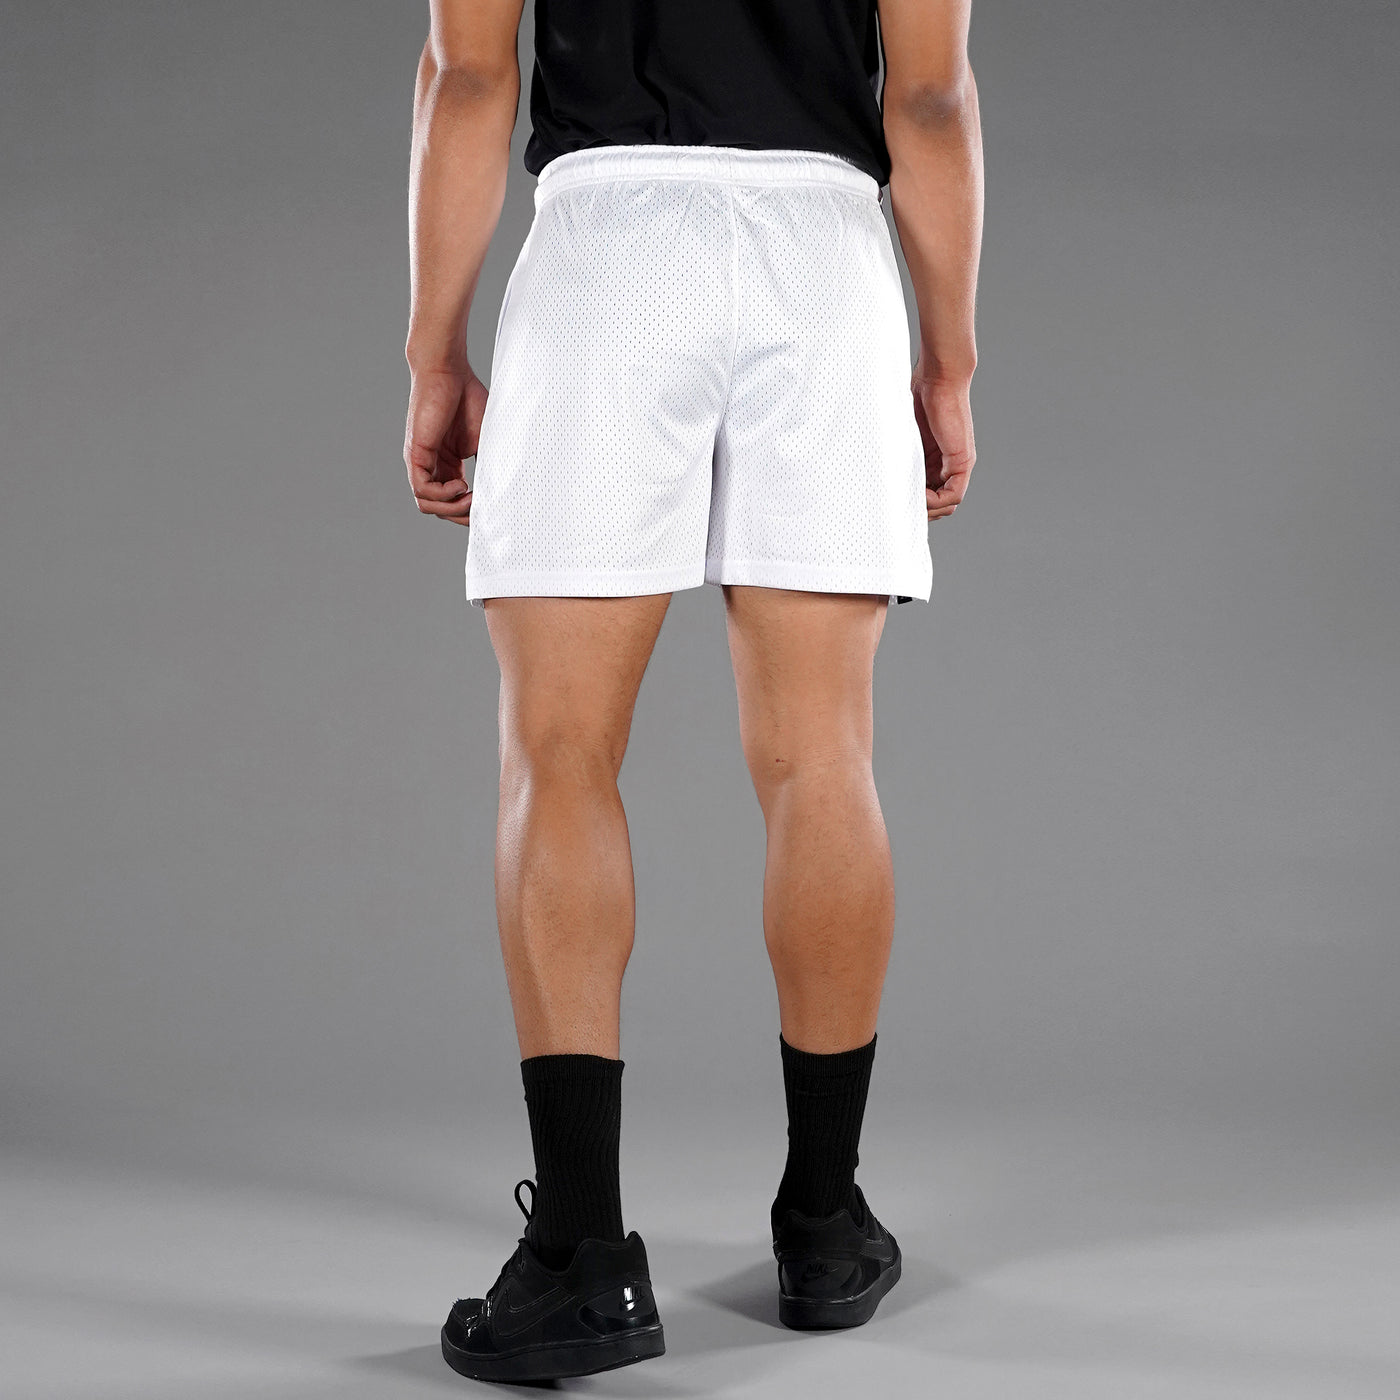 Basic White Shorts - 7"